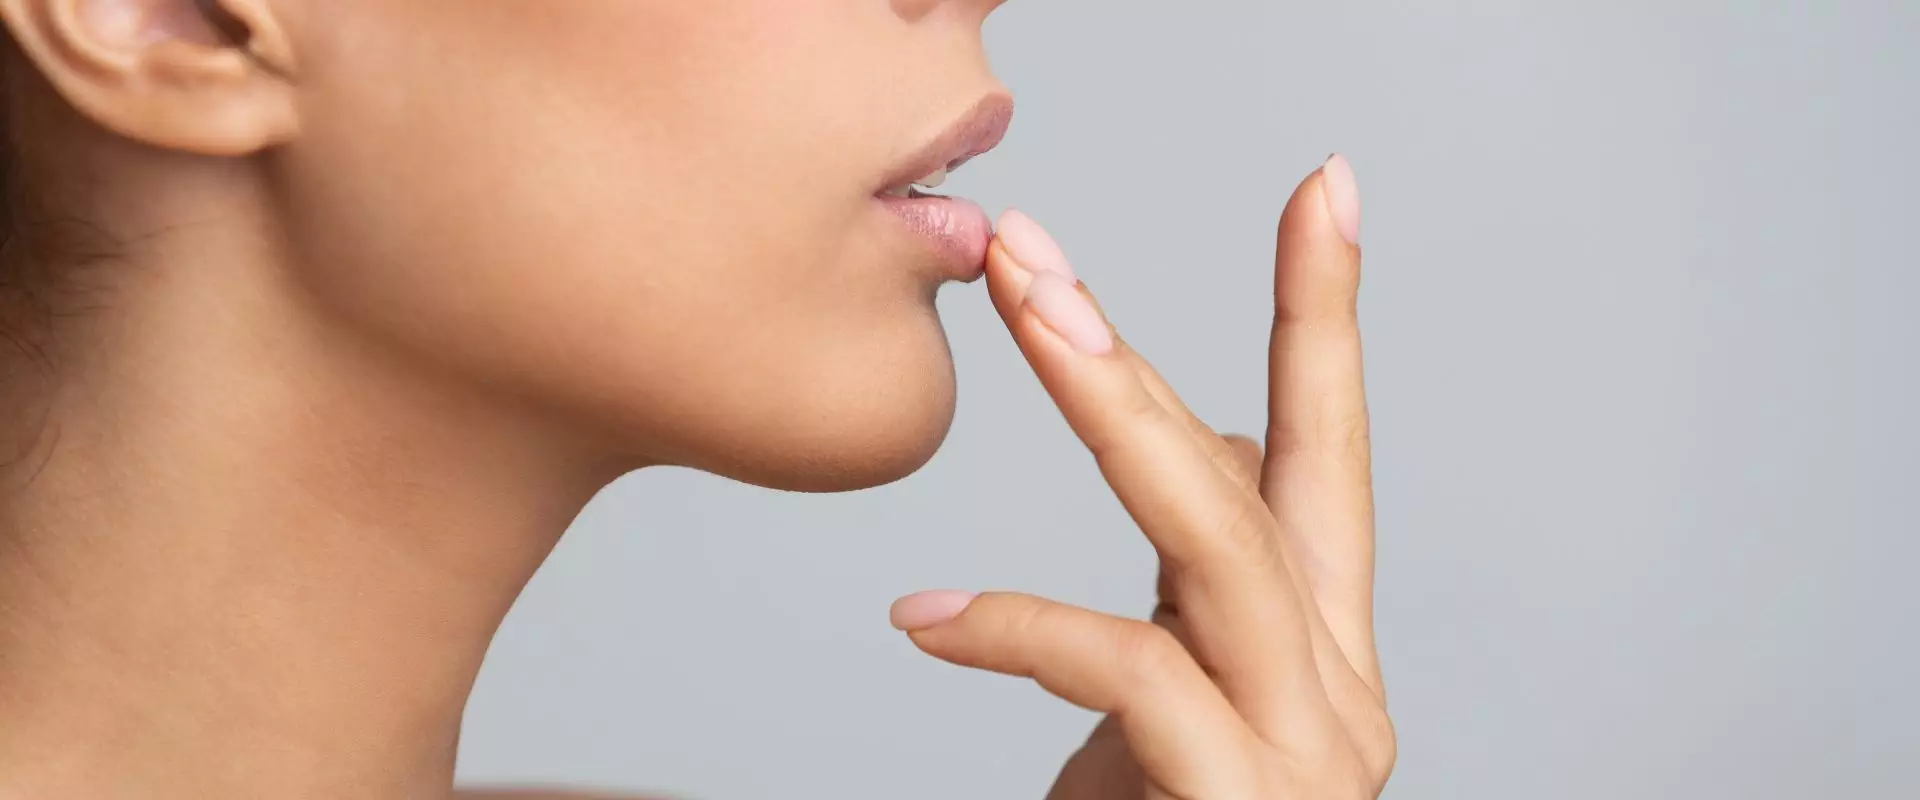 Zmiany na ustach - o czym świadczą? Kobieta dotyka palcem ust.